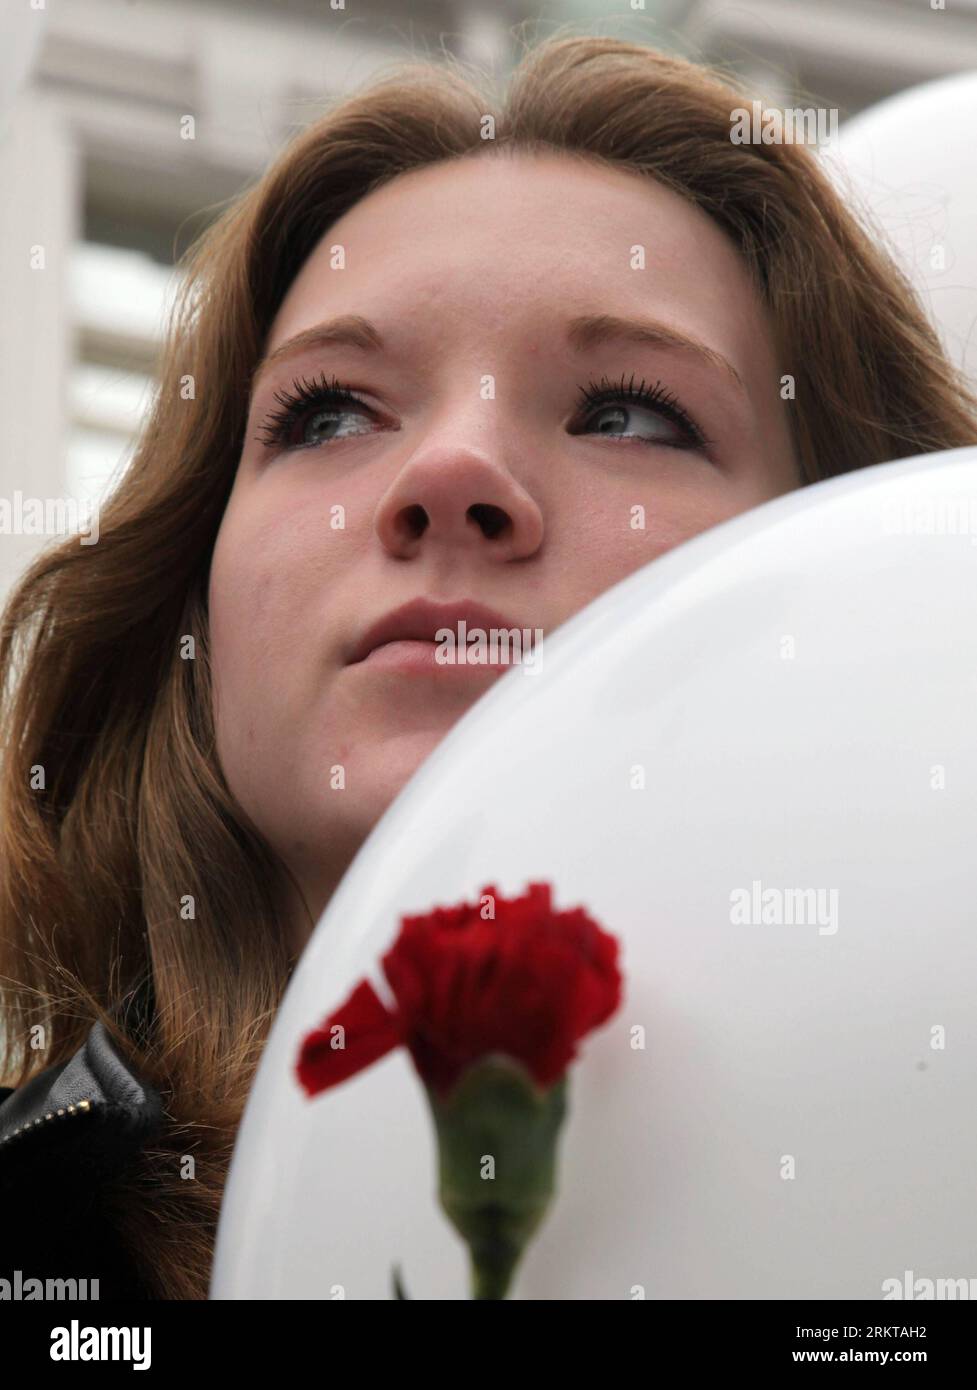 Bildnummer: 58424114 Datum: 03.09.2012 Copyright: Imago/Xinhua (120903) -- MOSCÚ, 3 de septiembre de 2012 (Xinhua) -- Una niña se encuentra junto a un monumento a las víctimas del ataque terrorista de Beslán, durante una conmemoración en Moscú, Rusia, el 3 de septiembre de 2012. El 1 de septiembre de 2004, los separatistas chechenos llevaron a más de 1.000 maestros, padres y niños al gimnasio de la Escuela Nº 1 de Beslan. El gimnasio estaba equipado con explosivos y un total de 334 rehenes, incluidos 186 niños, perdieron la vida cuando el asedio llegó a su sangrienta conclusión tres días después. (XINHUA) RUSIA-MOSCÚ-BESLÁN-TERRORISMO-CONMEMORACIÓN P Foto de stock